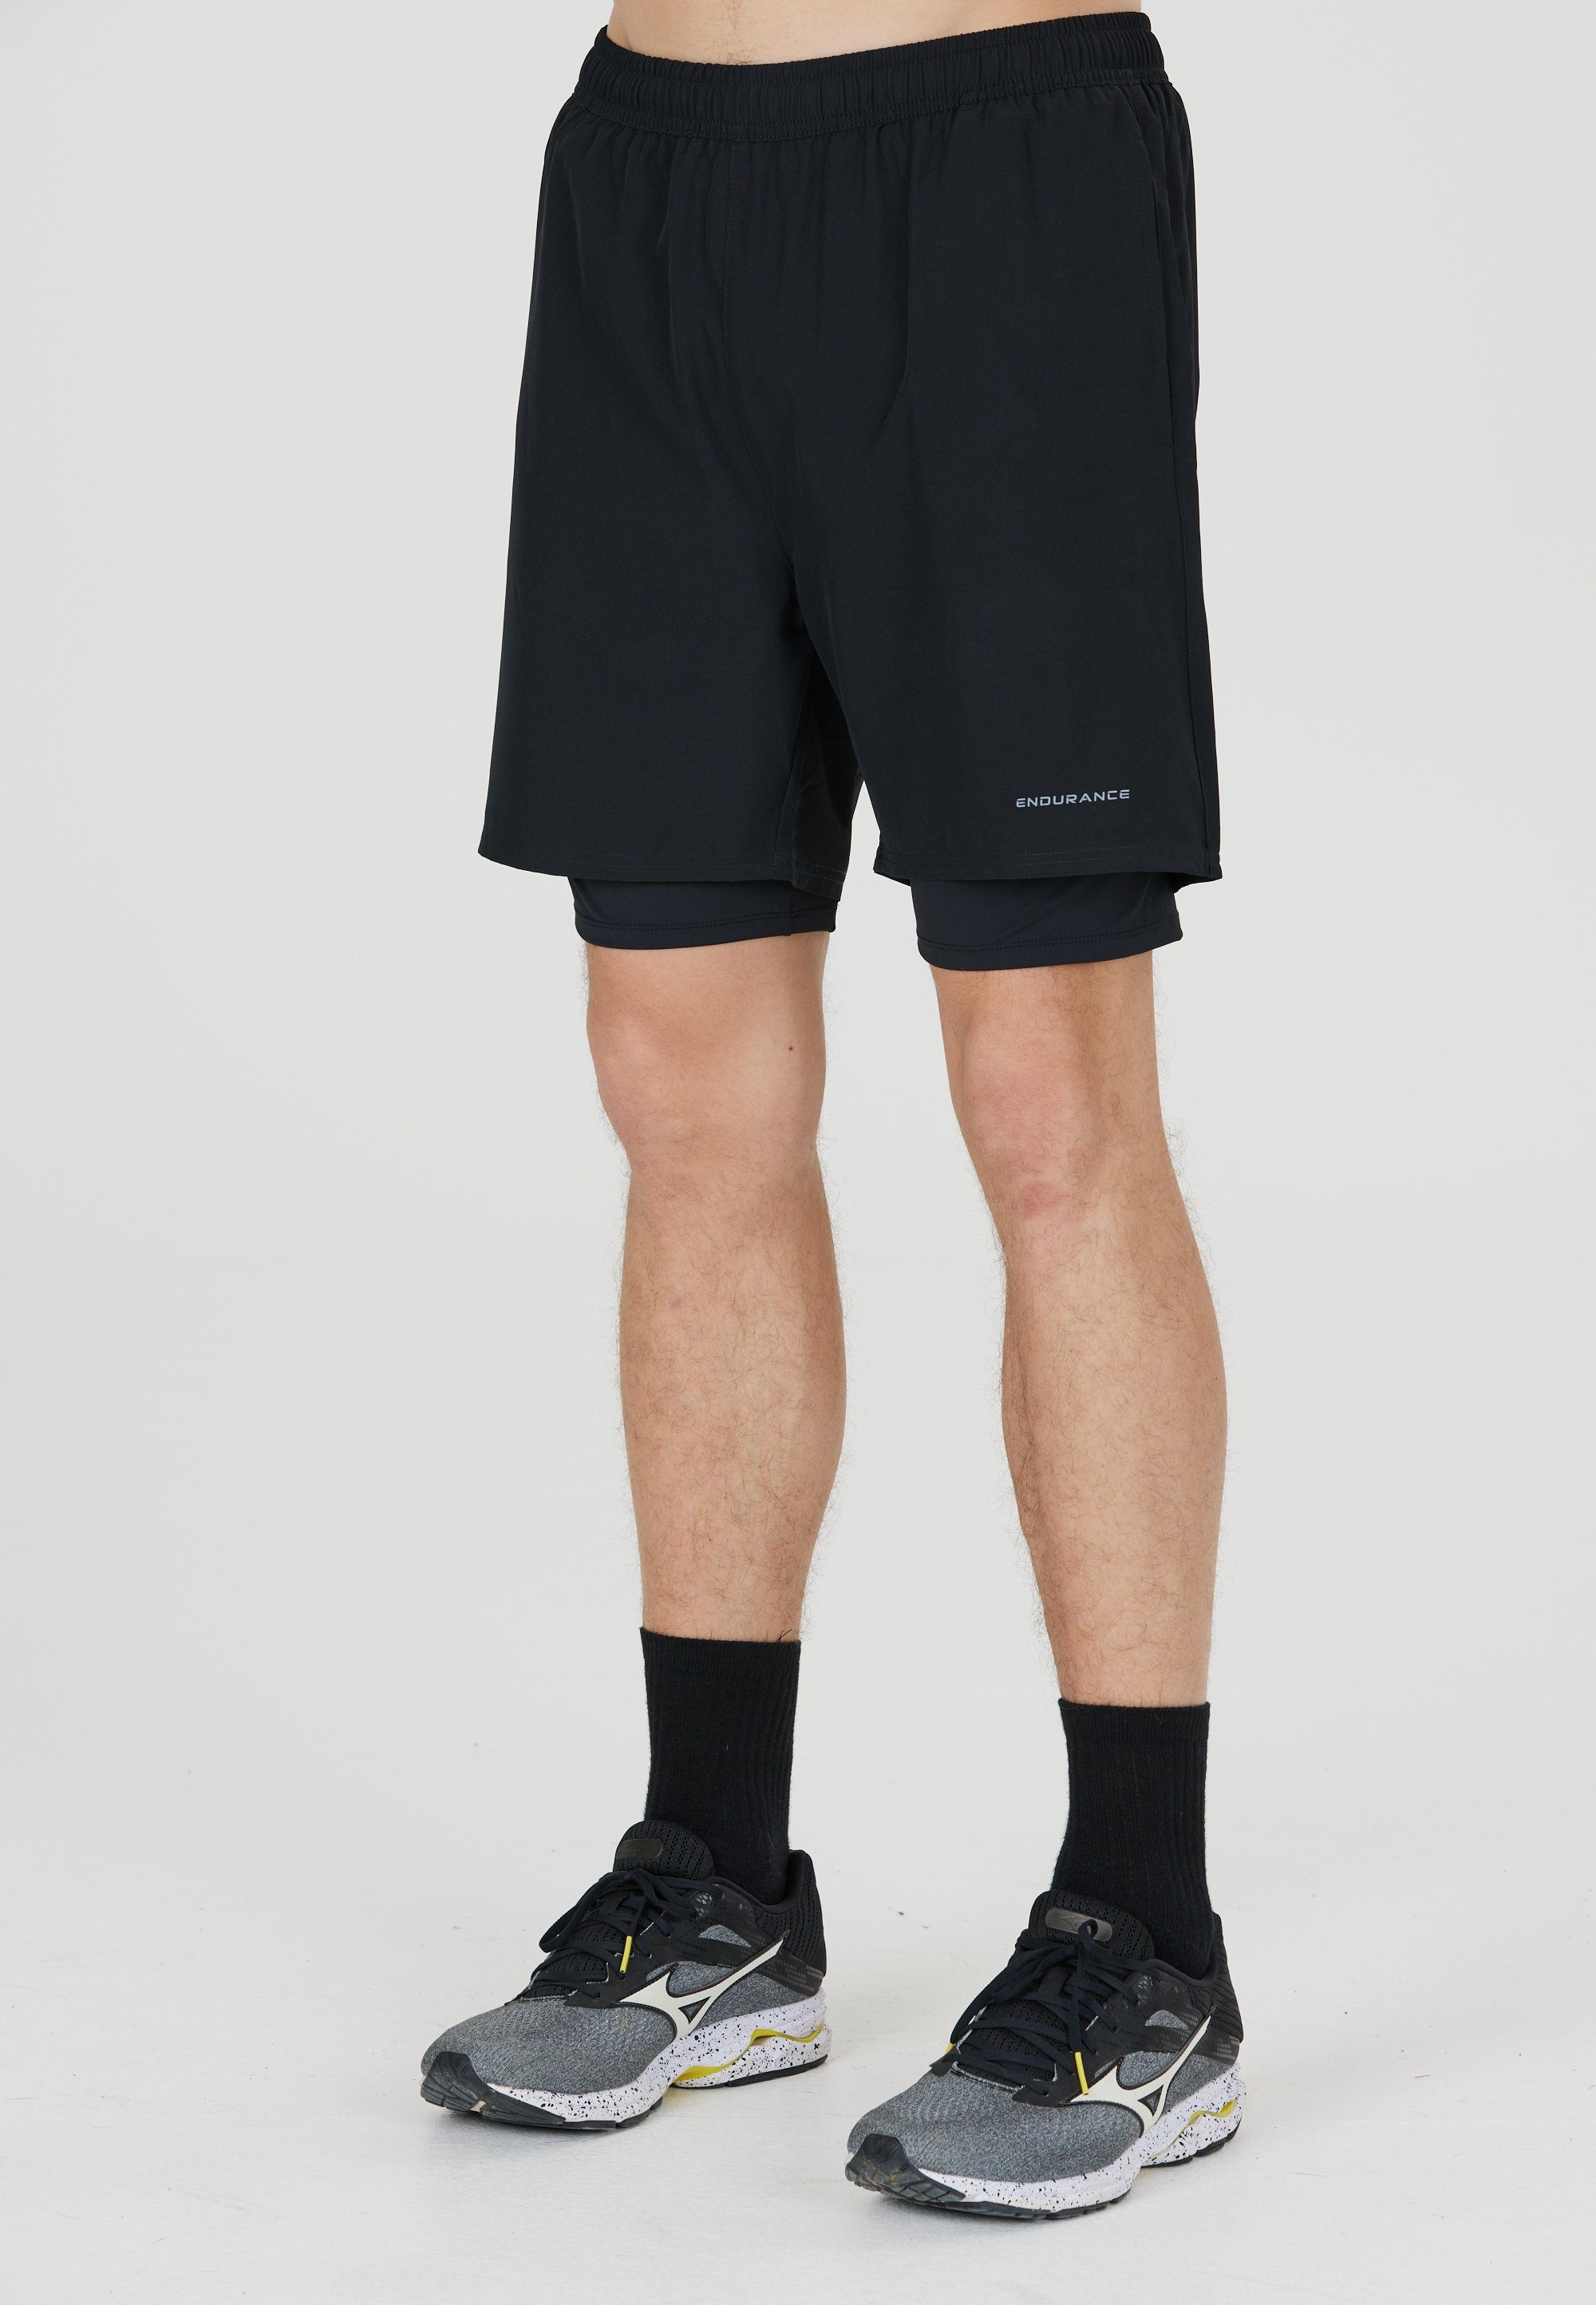 und ENDURANCE Shorts Im Quick Dry Kros 2-in-1-Design Stretch-Funktion schwarz mit